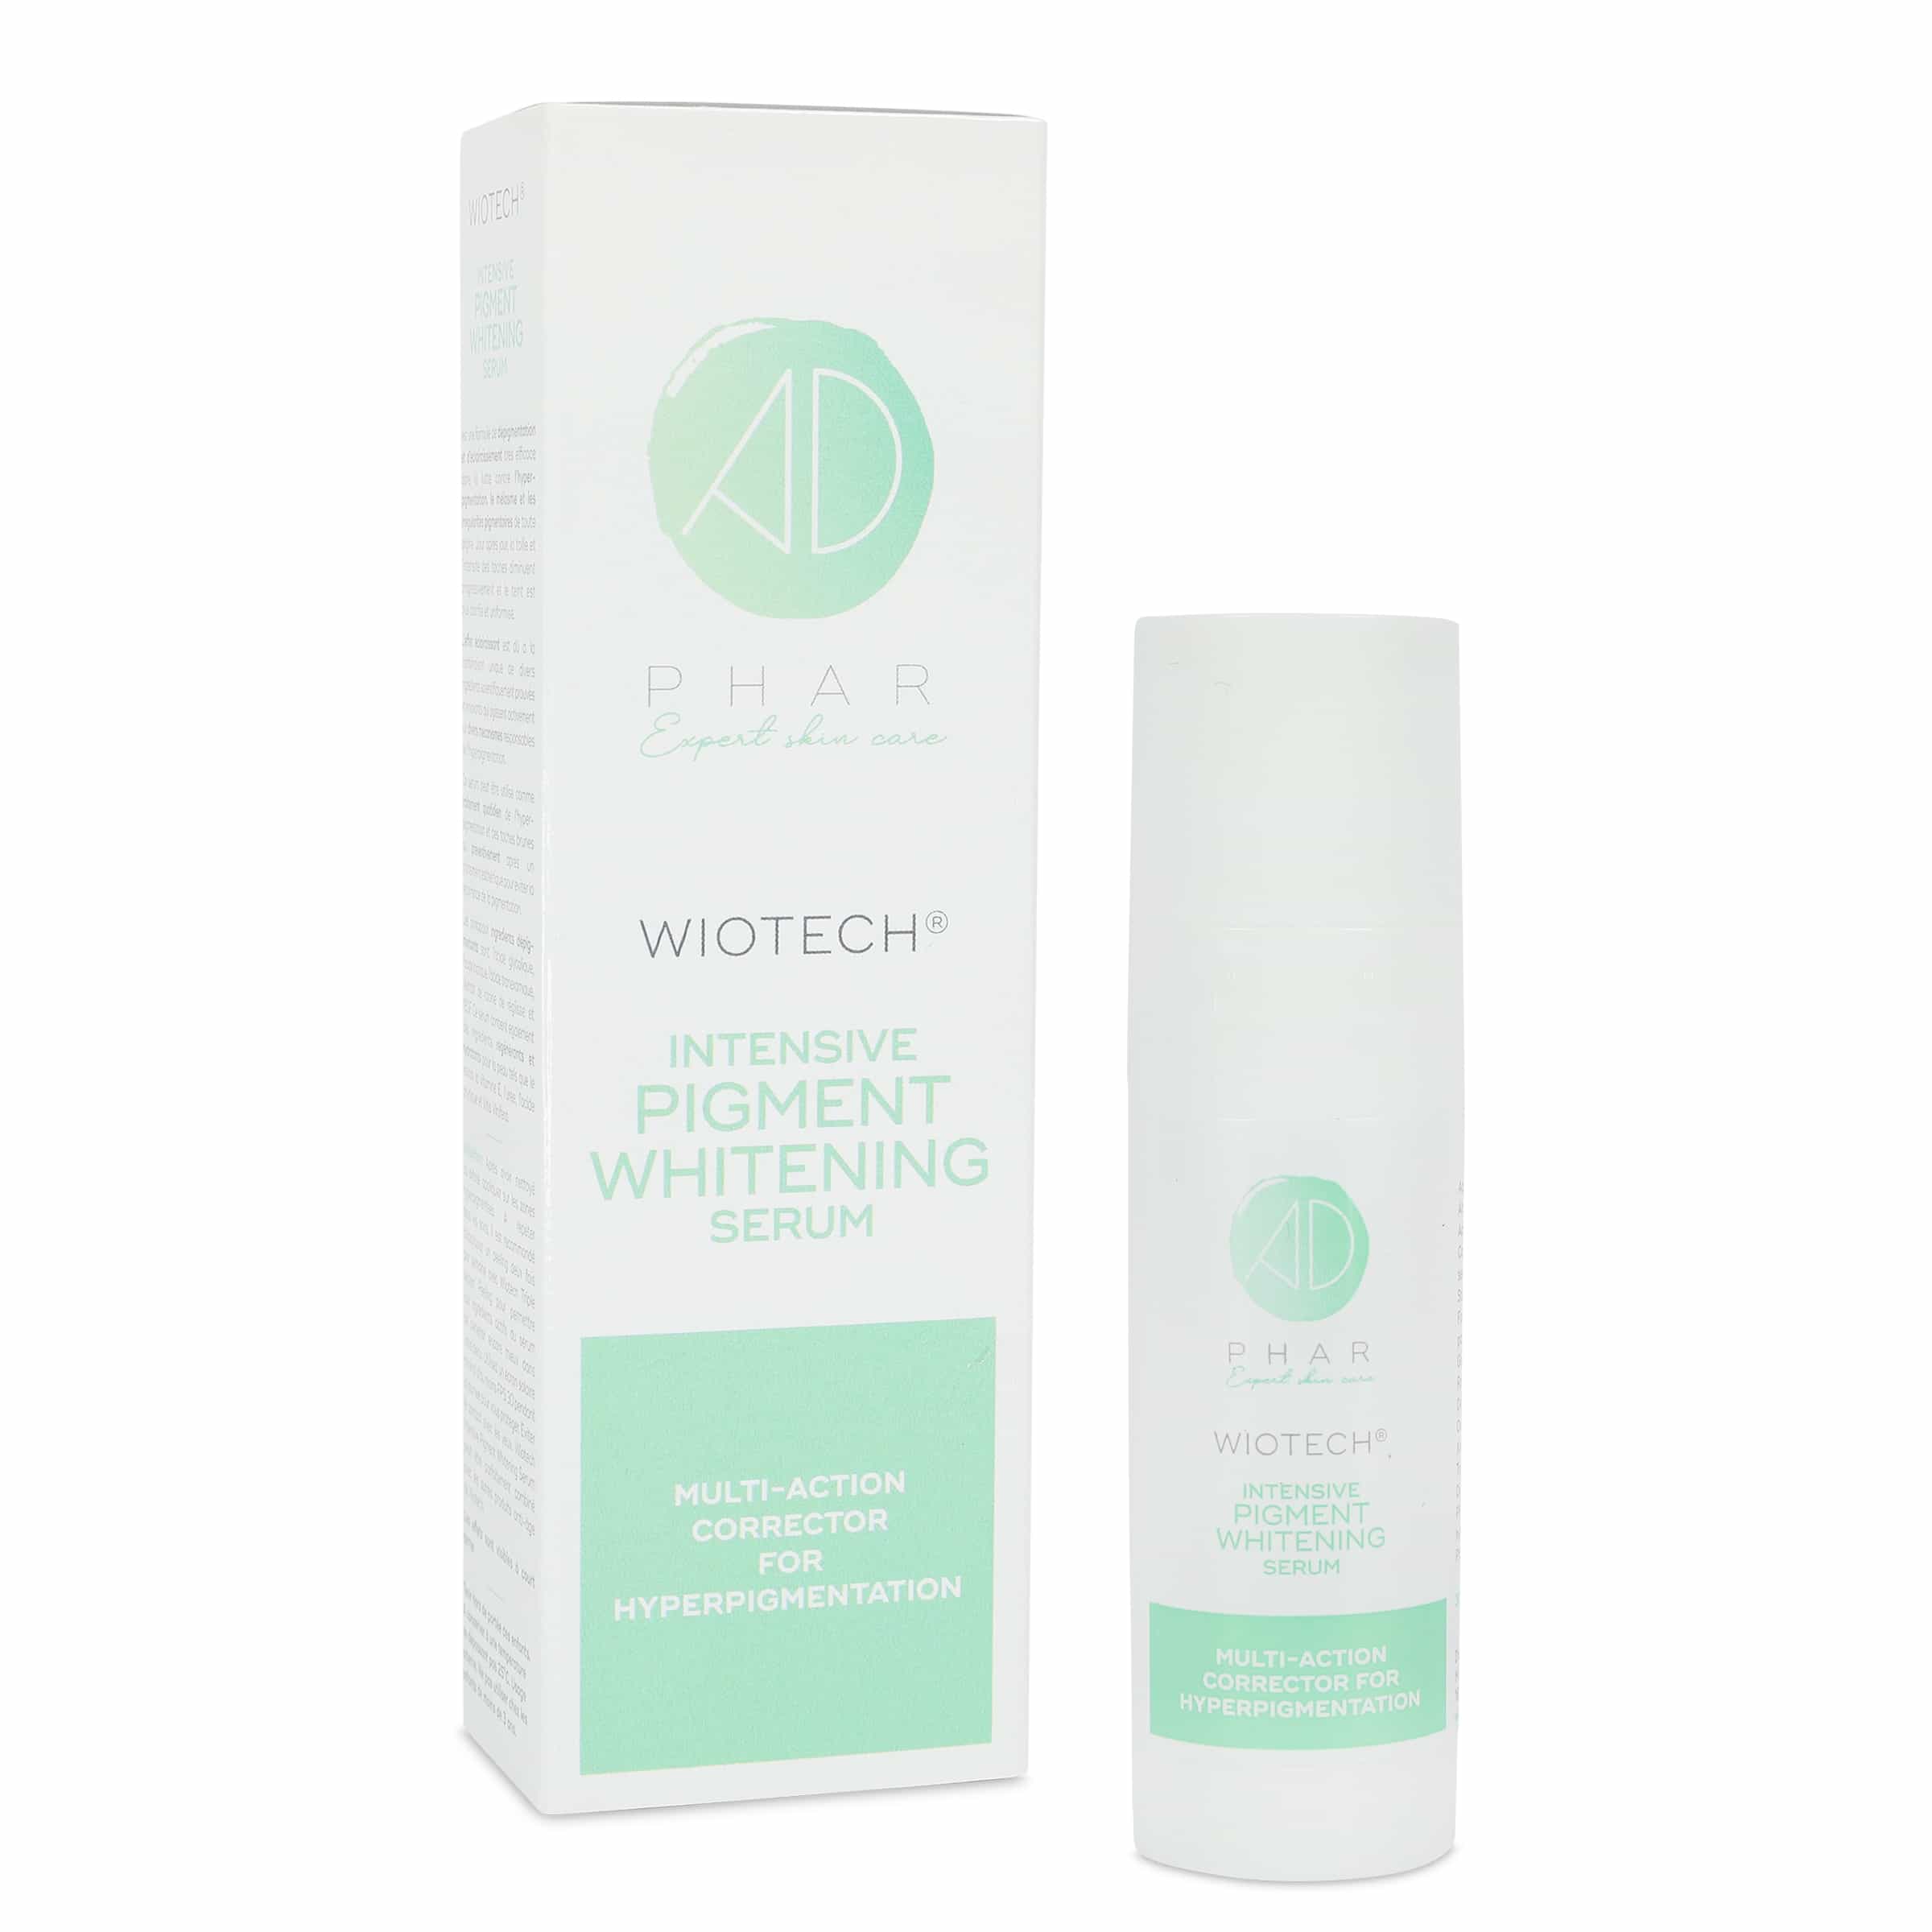 Wiotech Intensive Pigment Whitening Serum